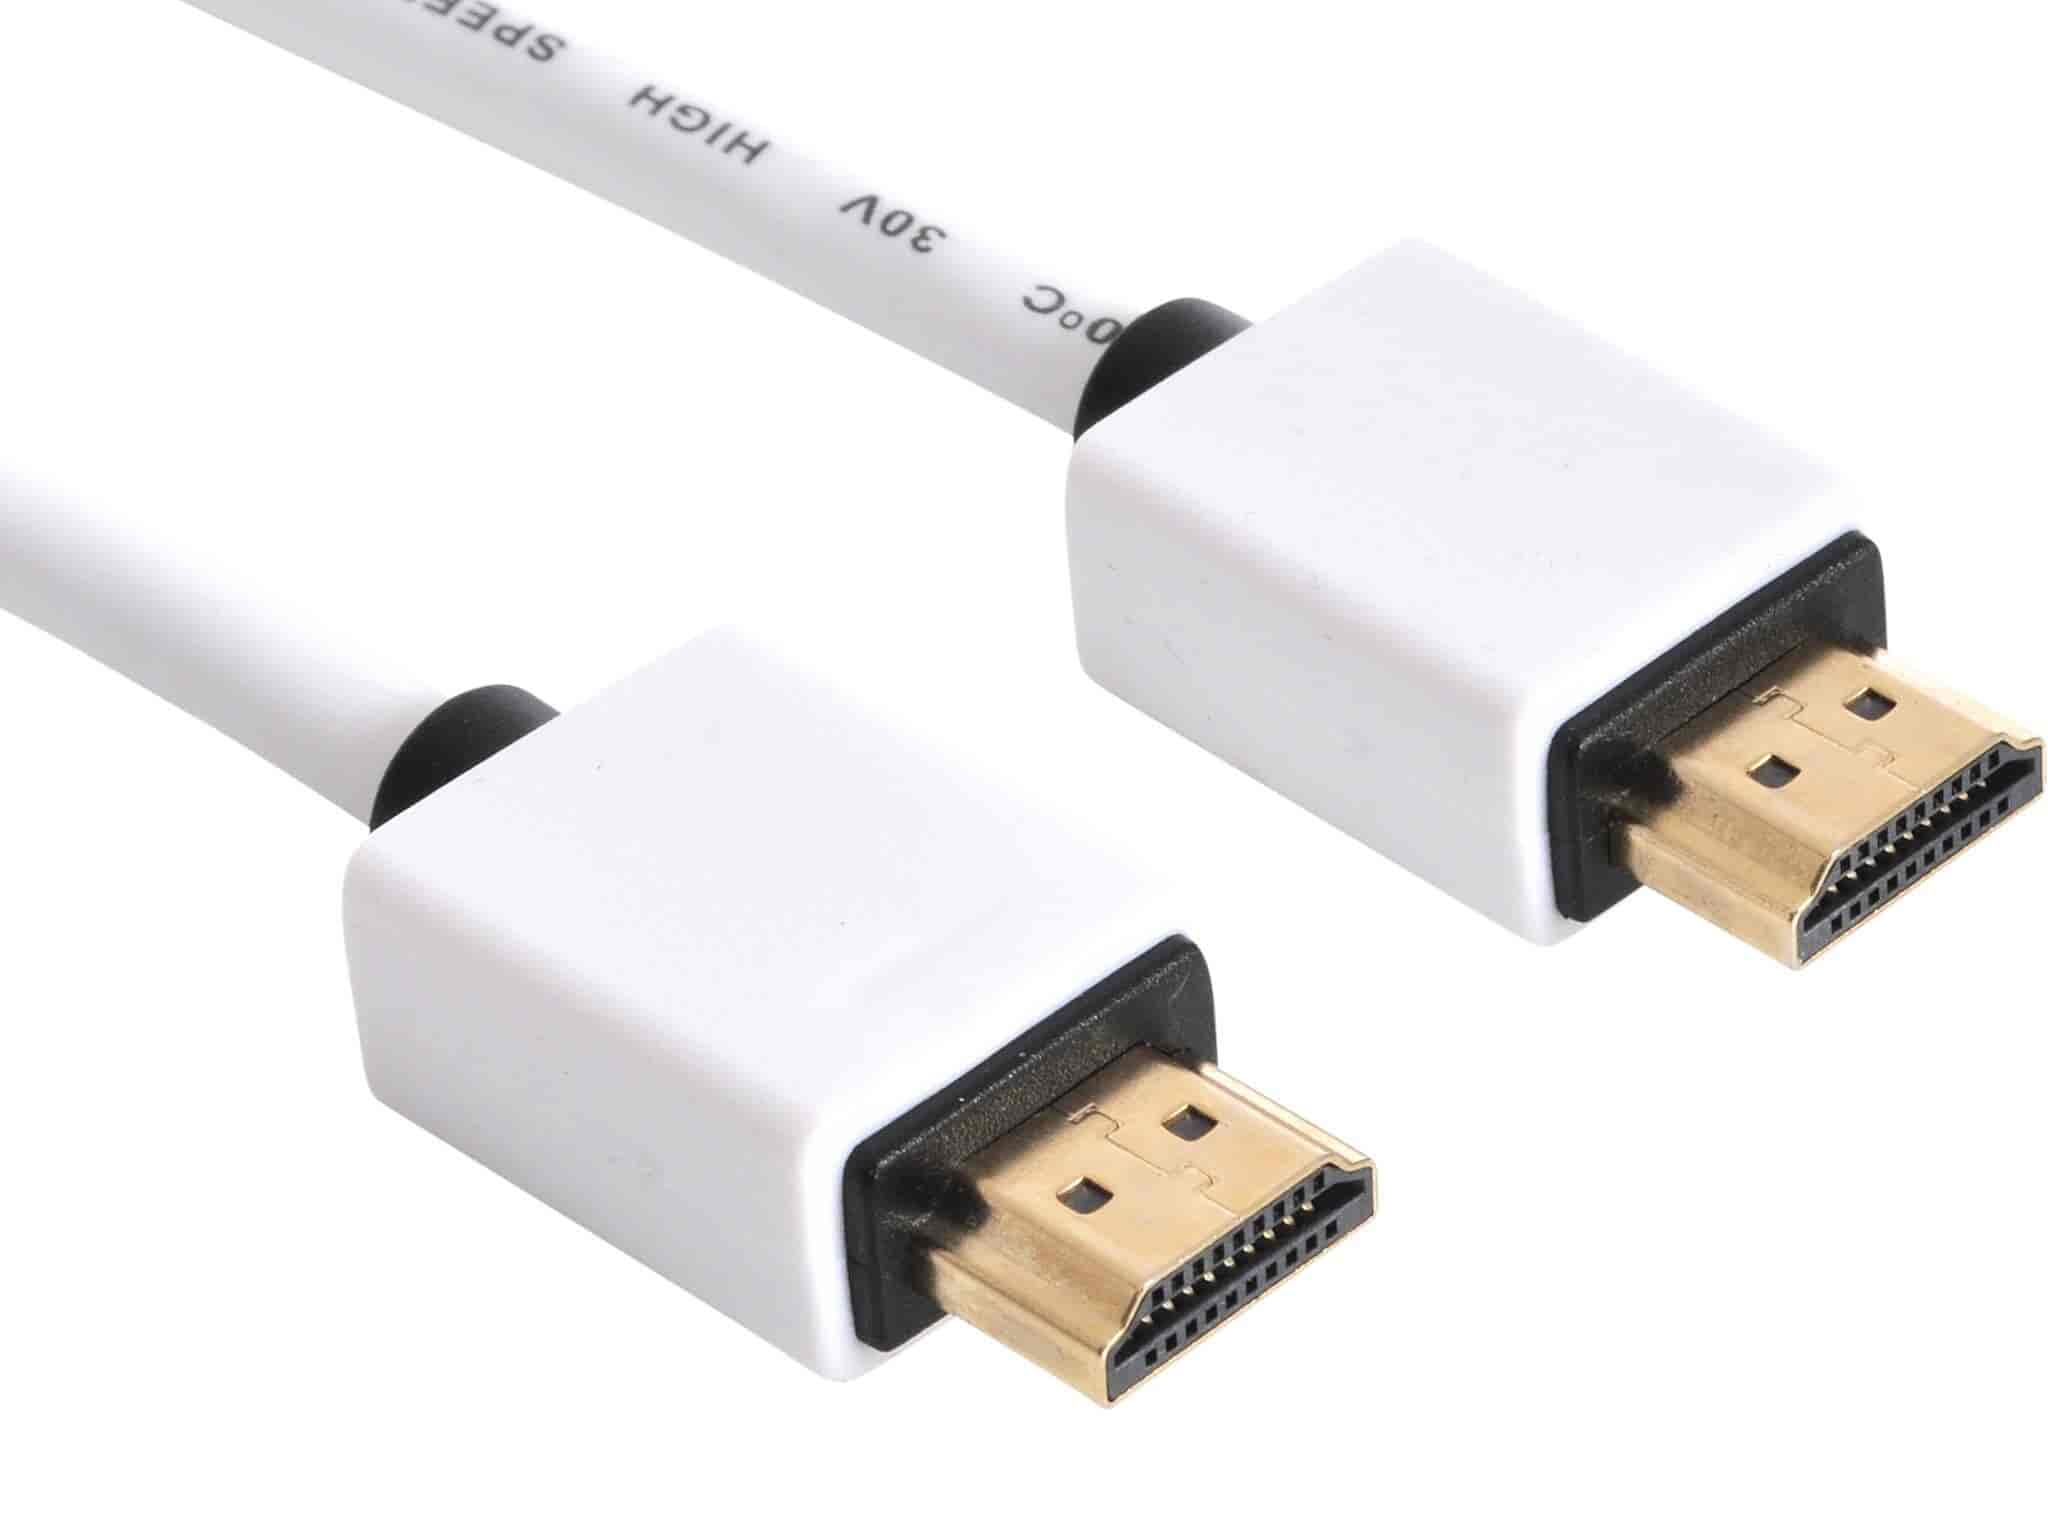 Billigt HDMI kabel i god kvalitet. Dobbelt kvalitetssikring, RoHS overholdelse og 5 års garanti.